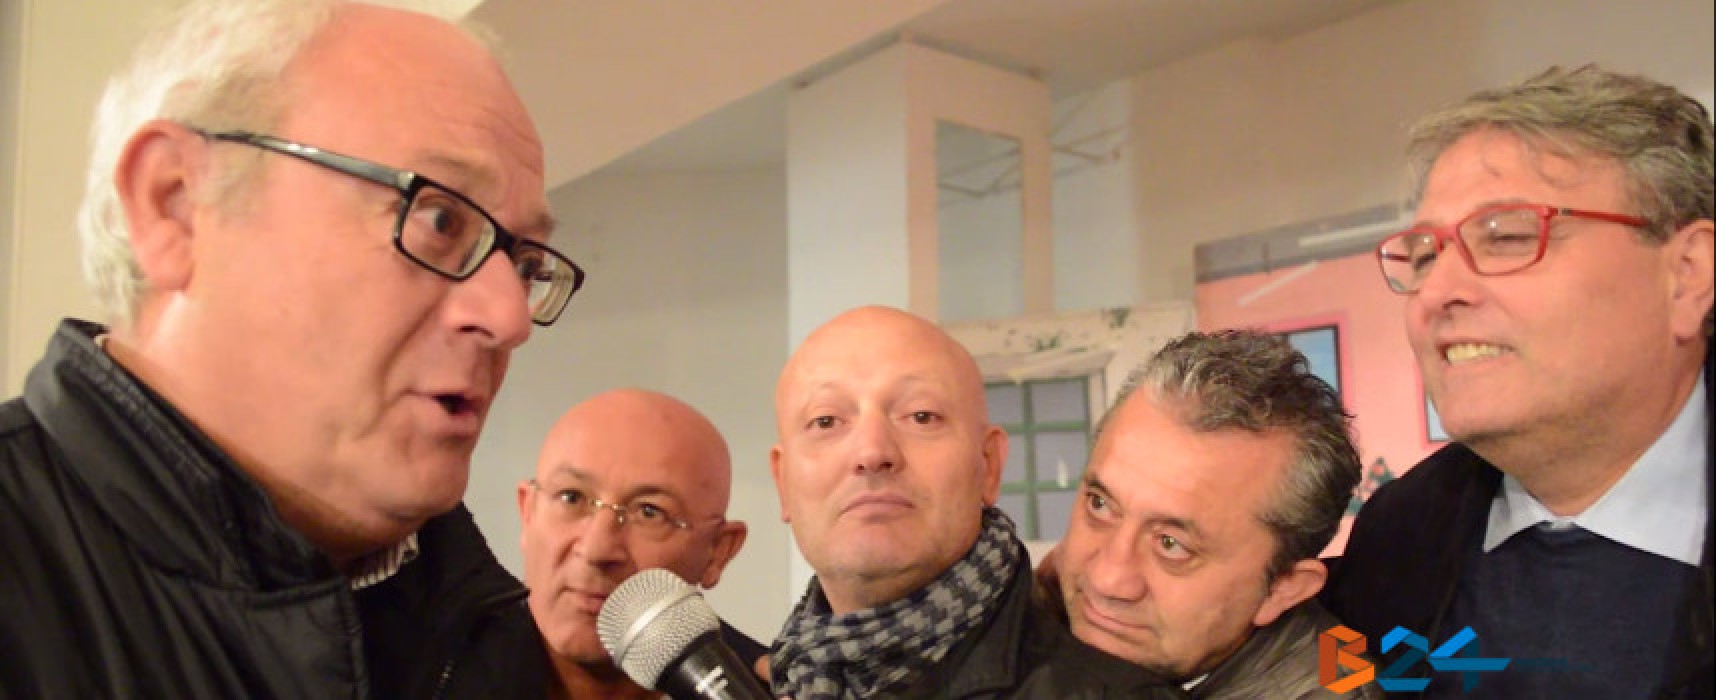 L’amicizia protagonista della nuova commedia della Compagnia Dialettale / Intervista VIDEO agli attori